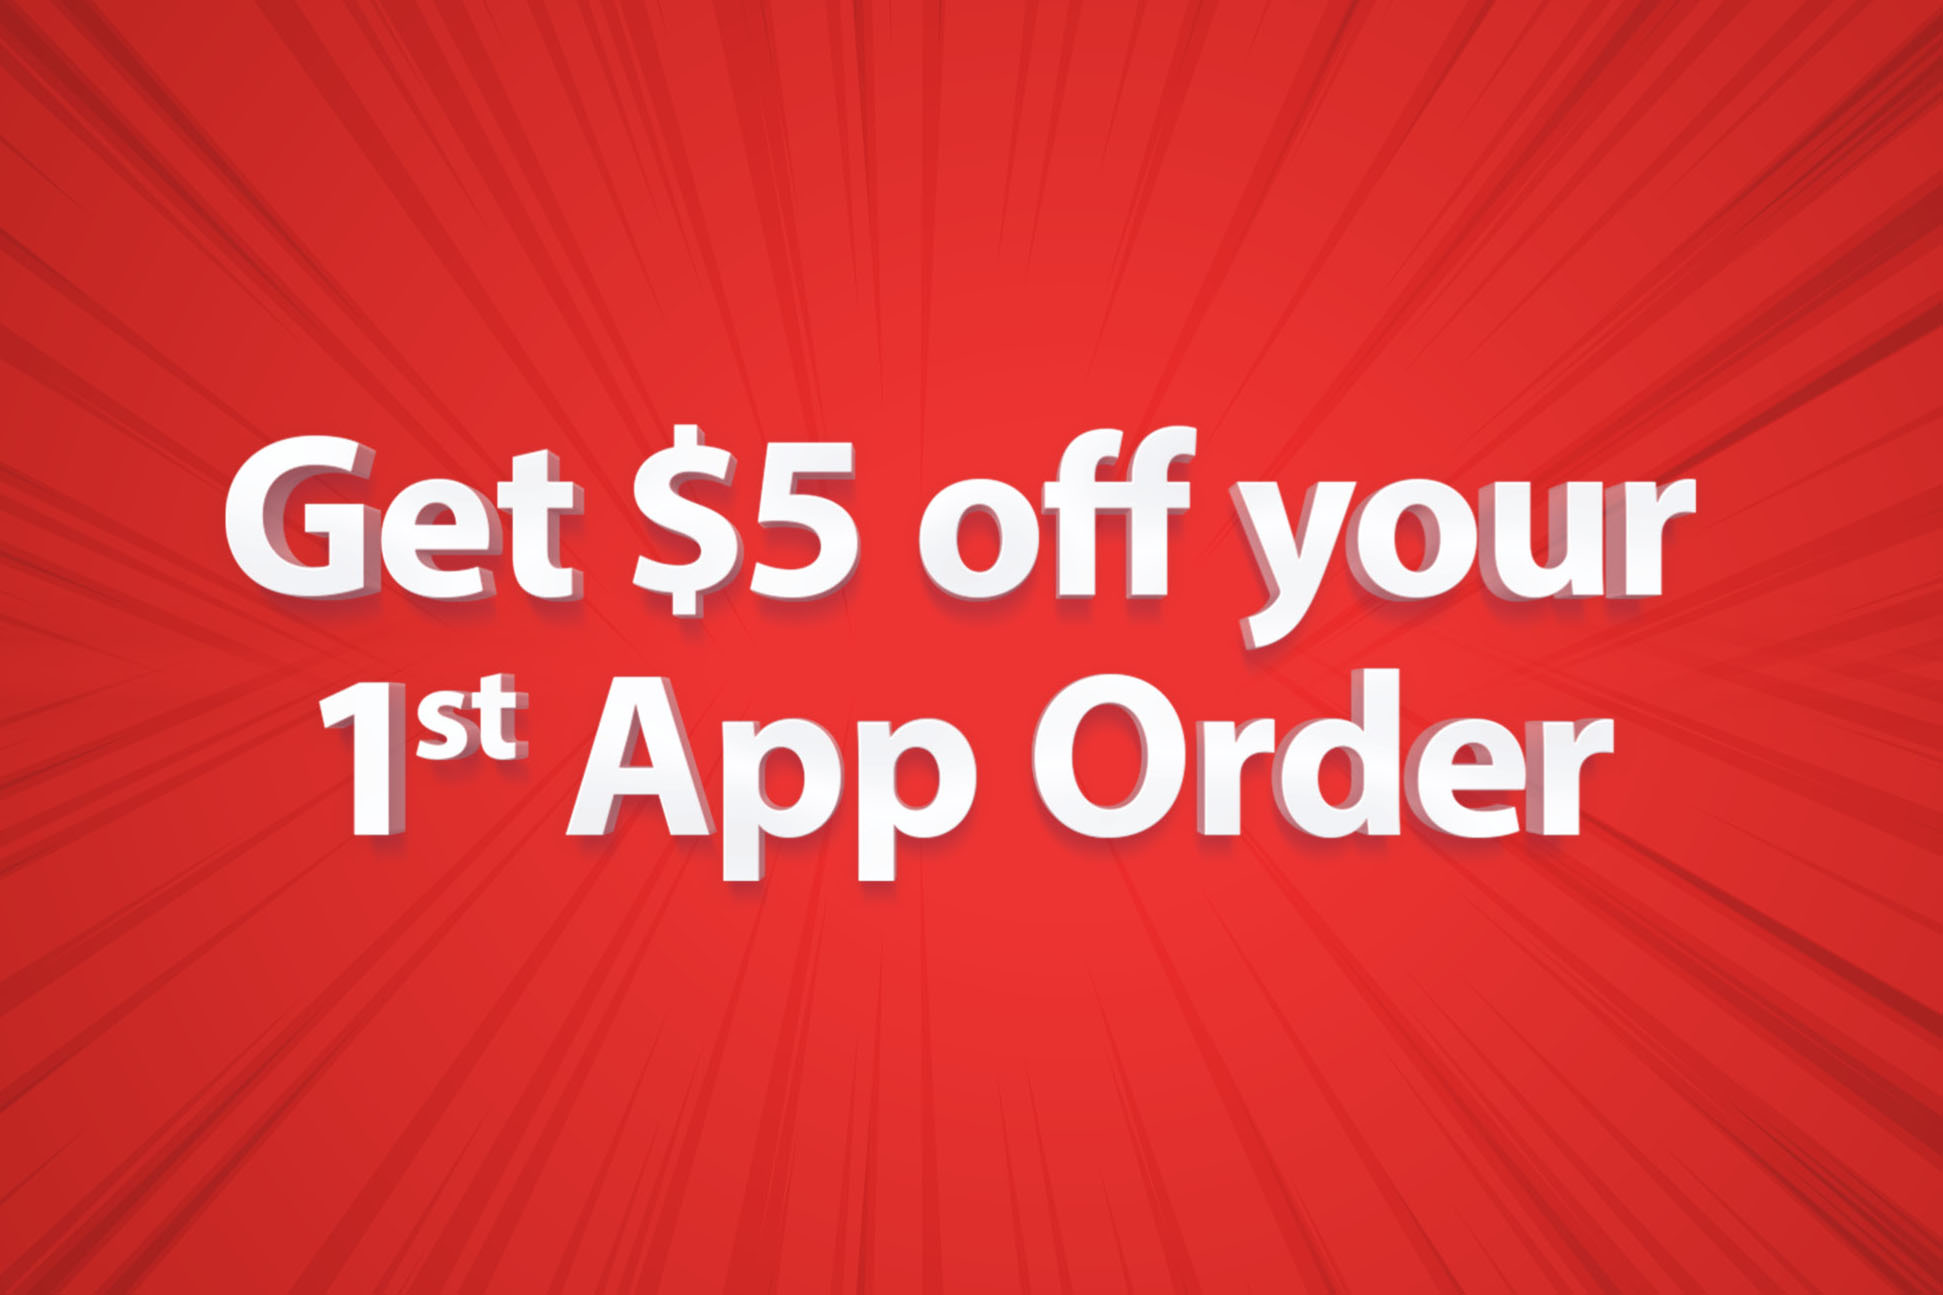 Get $5 off your 1st App Order